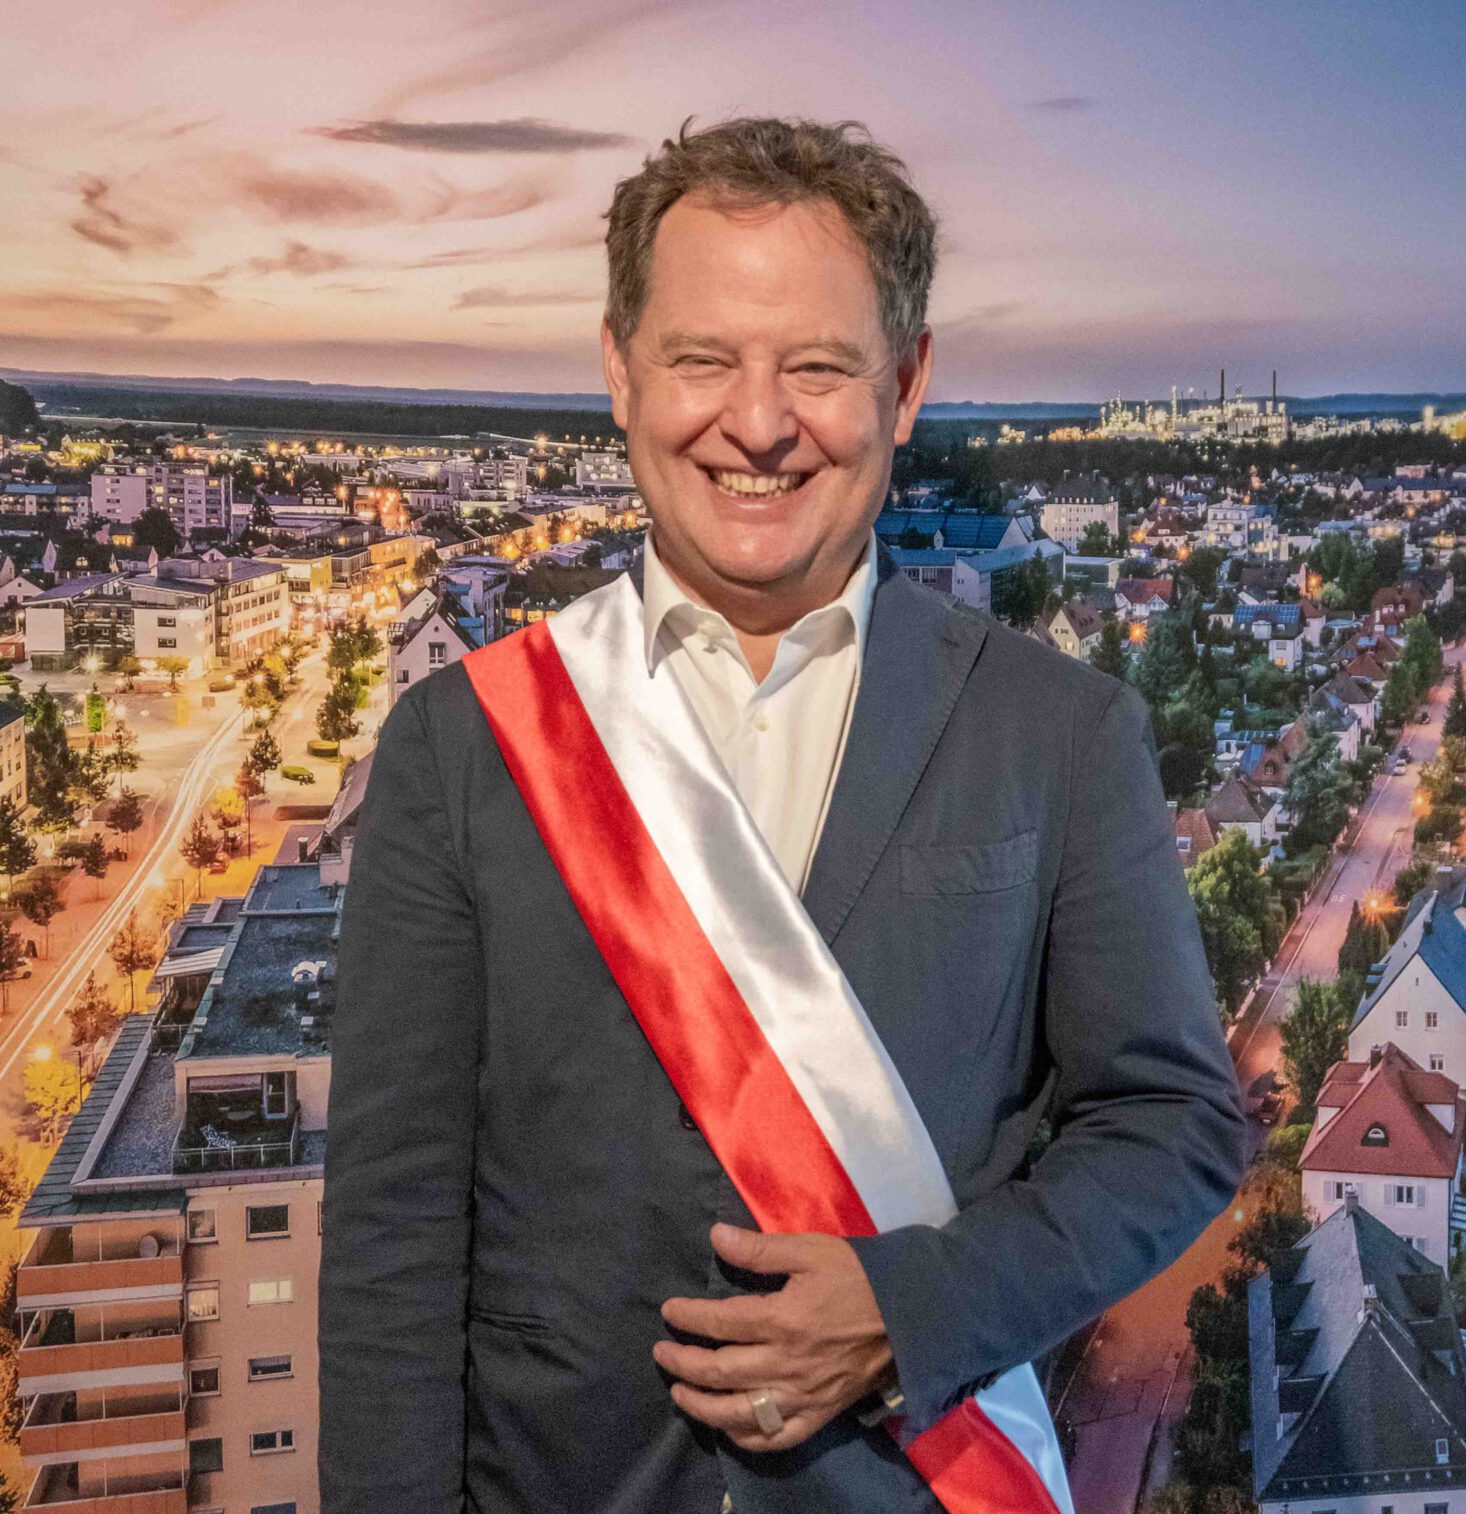 Erster Bürgermeister Florian Schneider mit der Schärpe aus der Partnerstadt Suloma © Stadt Burghausen / ebh